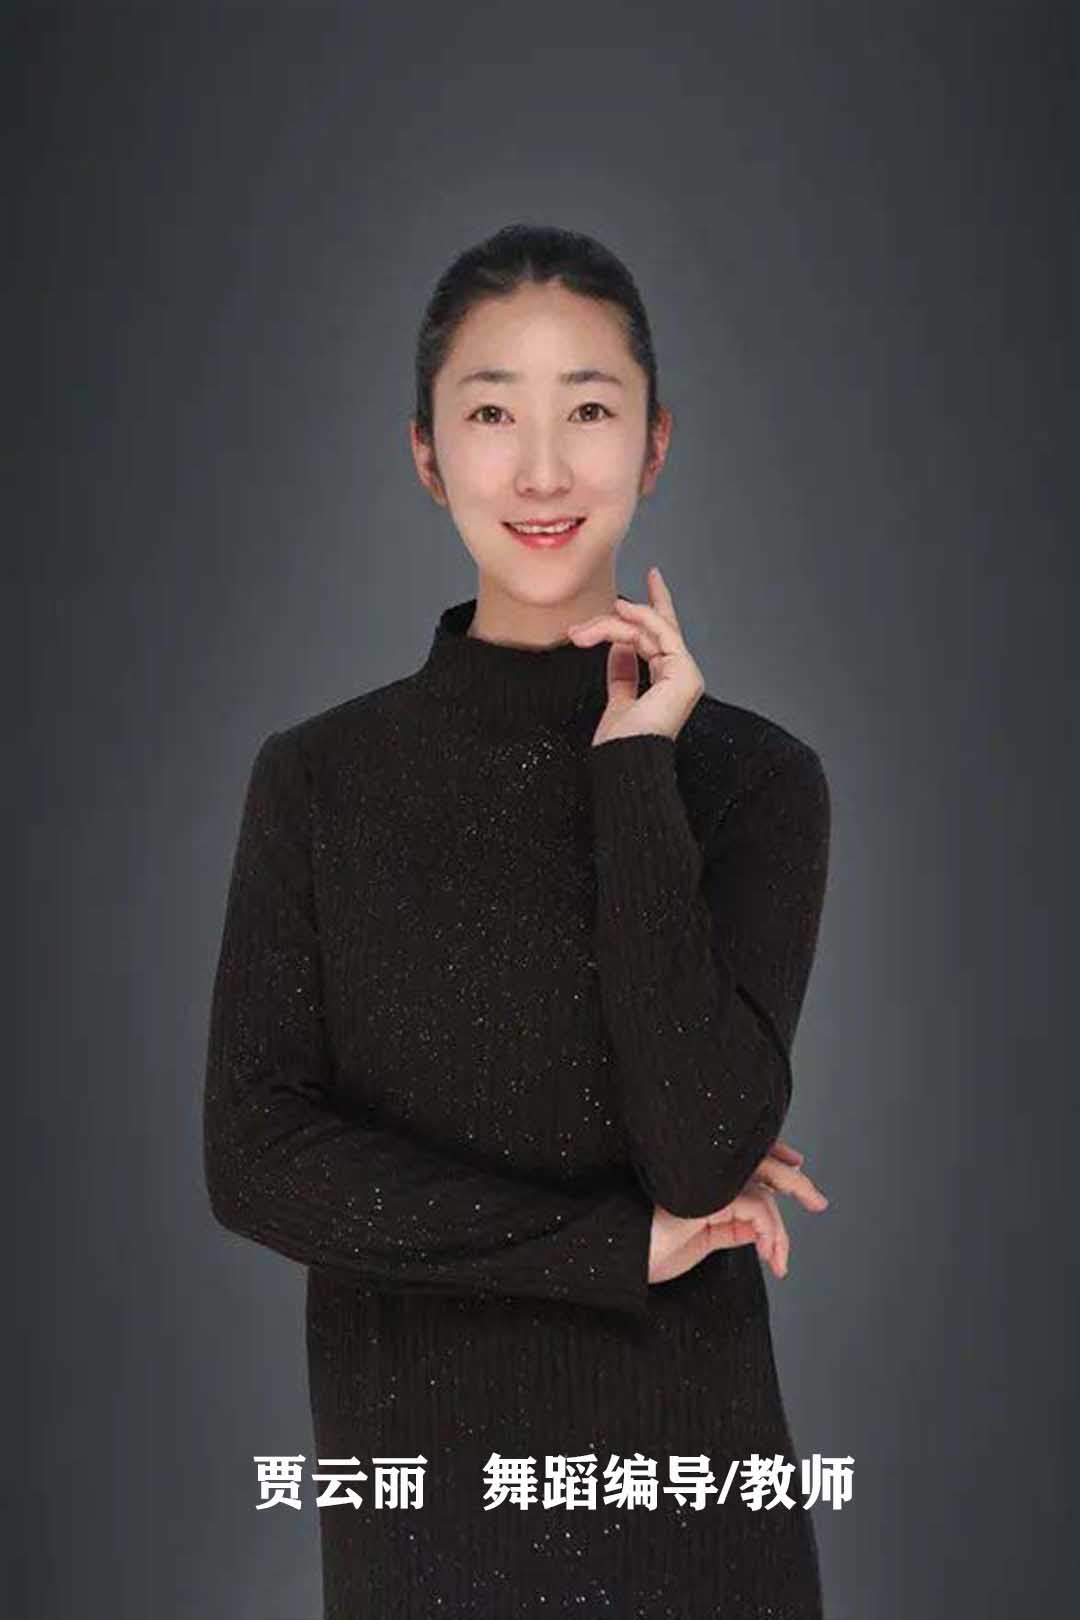 贾云丽   舞蹈编导、教师